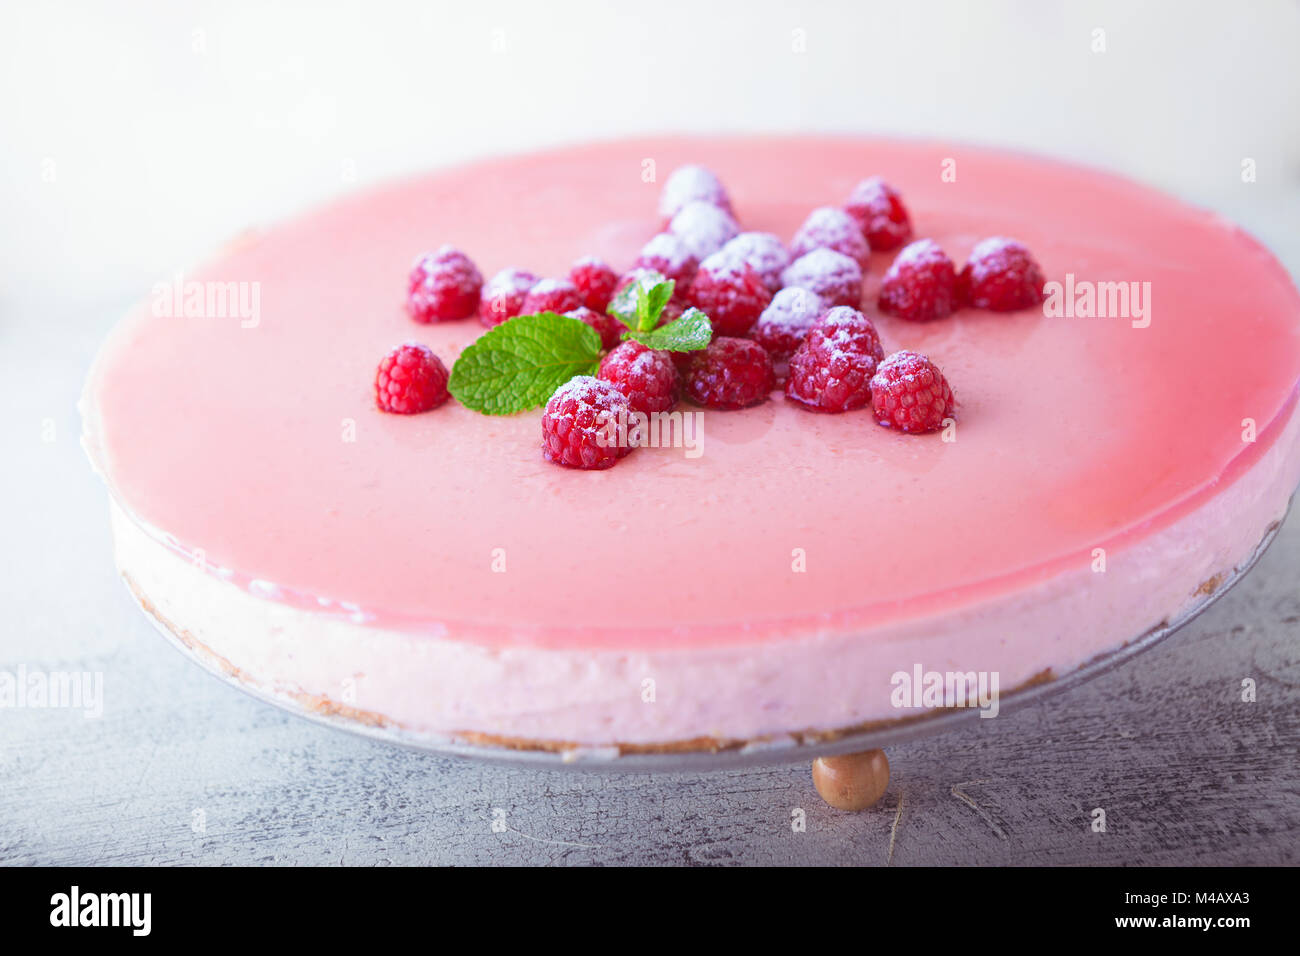 Lampone yogurt torta con frutti di bosco sulla parte superiore Foto Stock